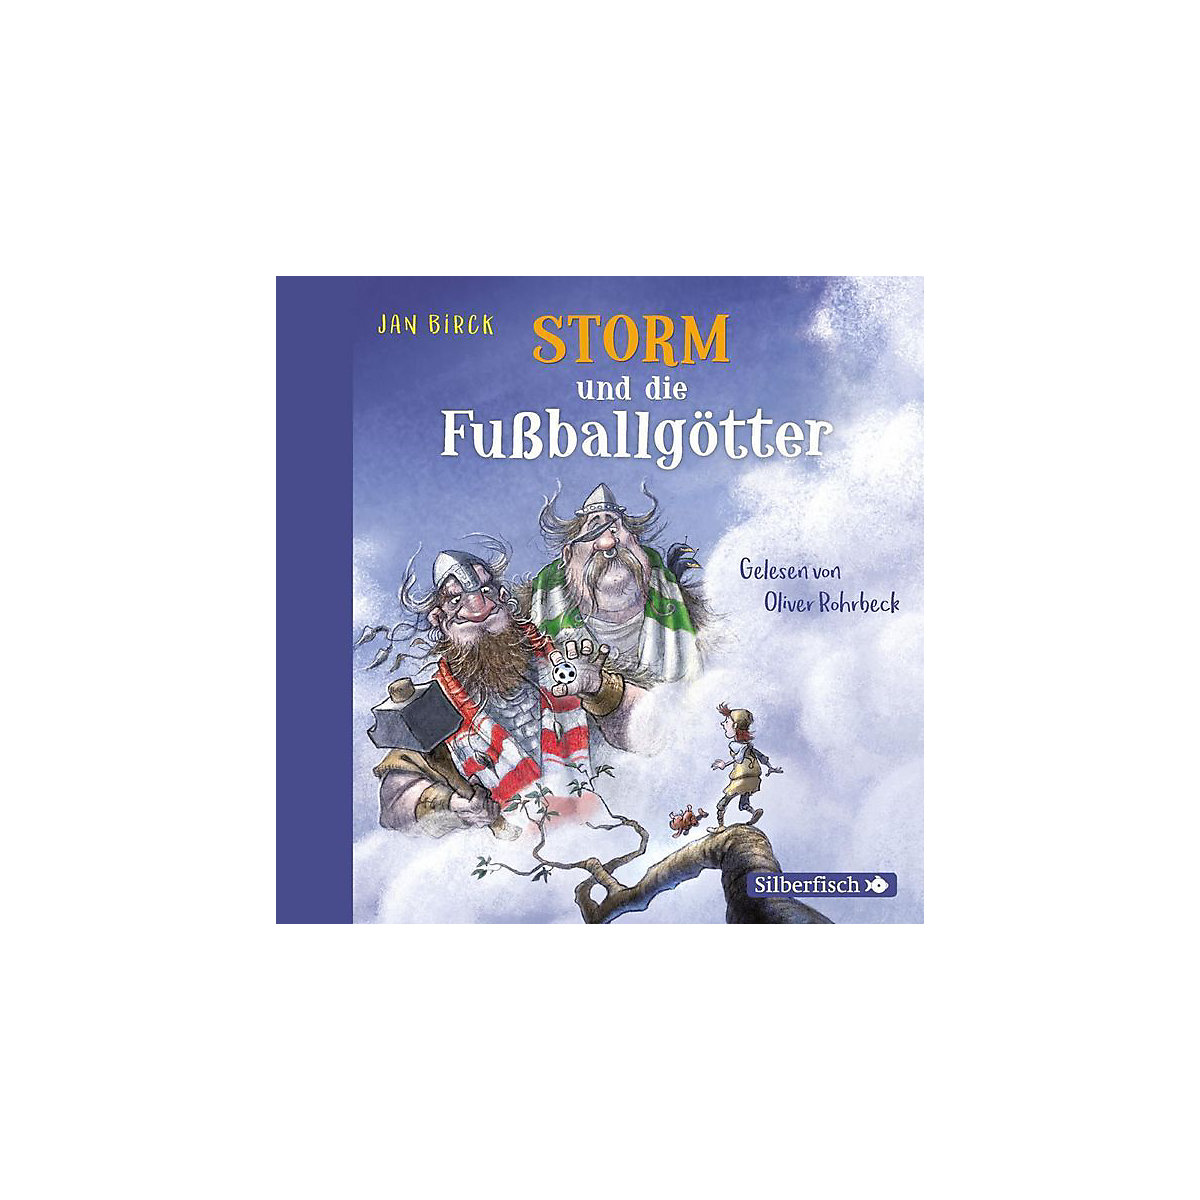 Storm und die Fußballgötter 2 Audio-CDs